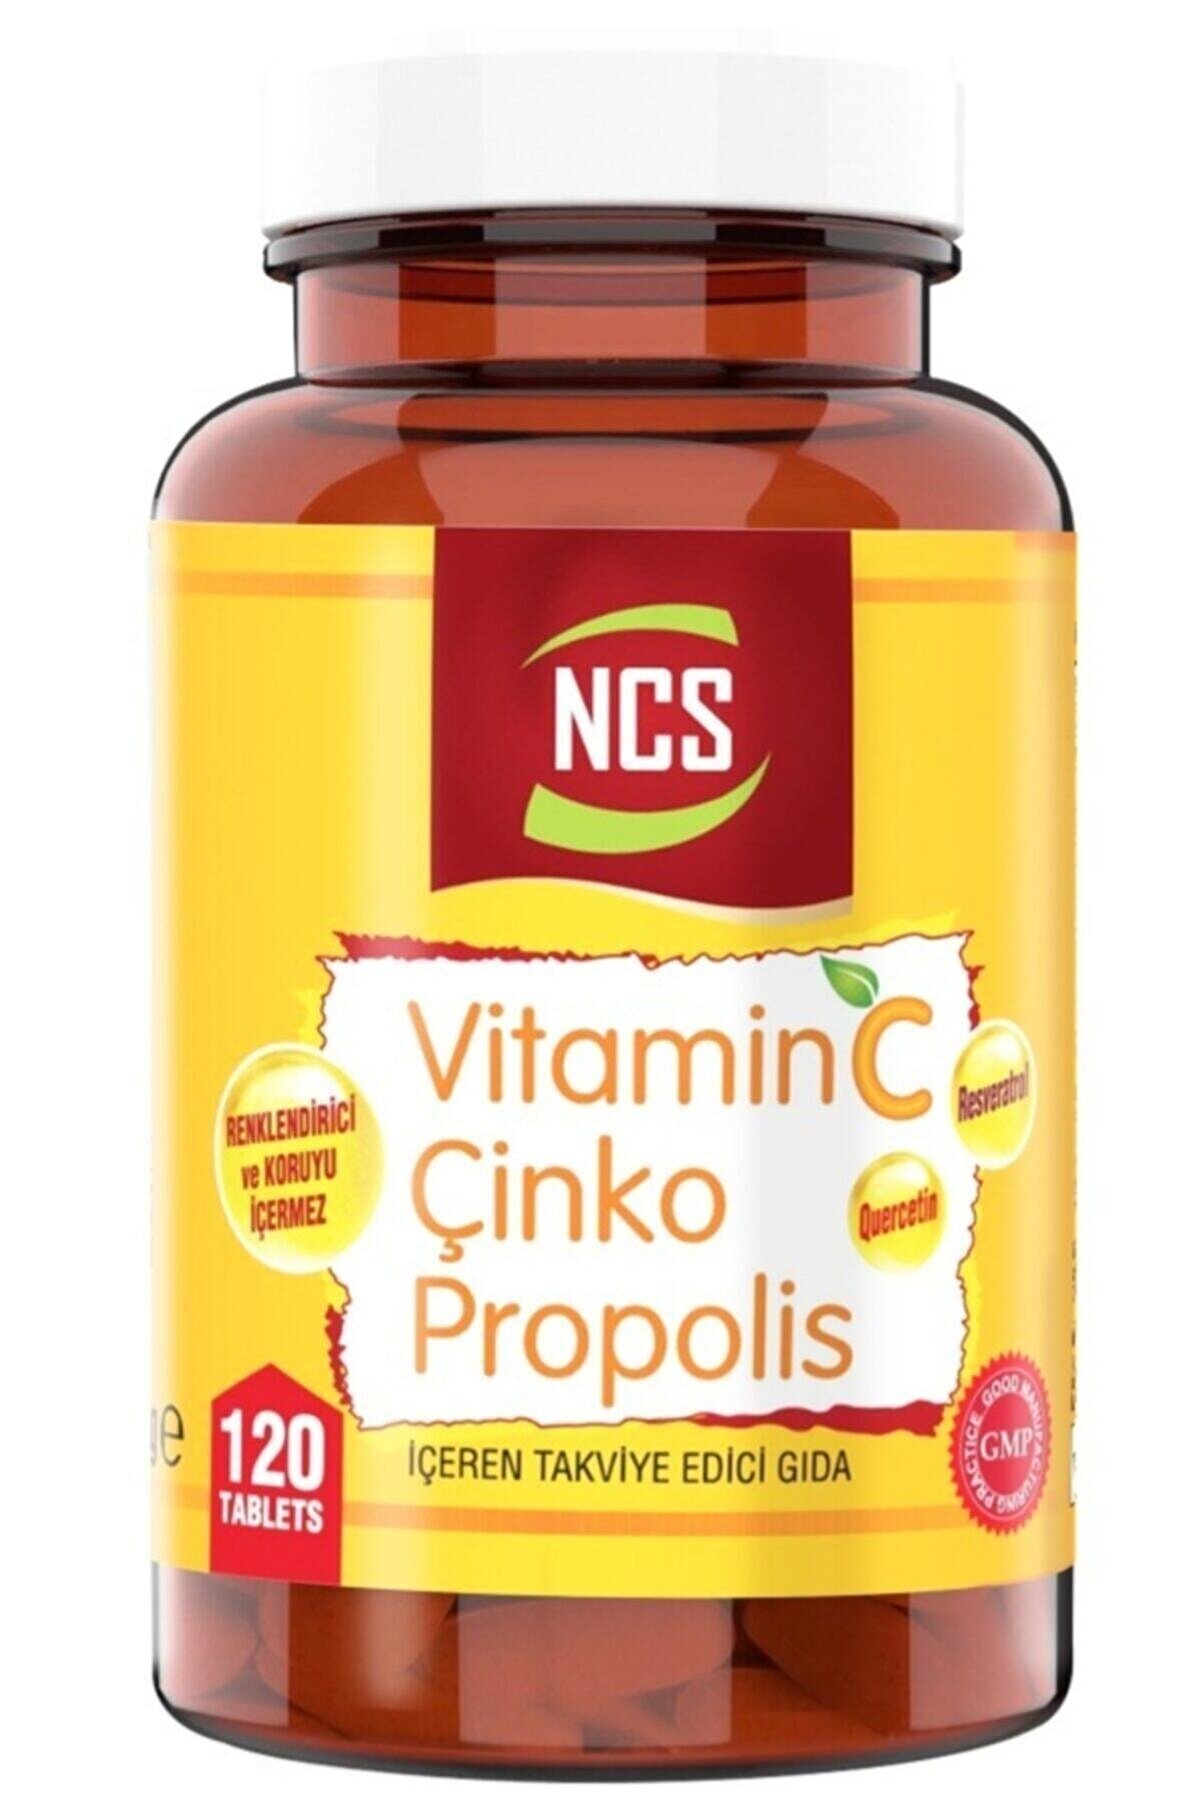 Ncs Vitamin C Çinko Propolis 120 Tablet Vitamin D Quercetin Resveratrol